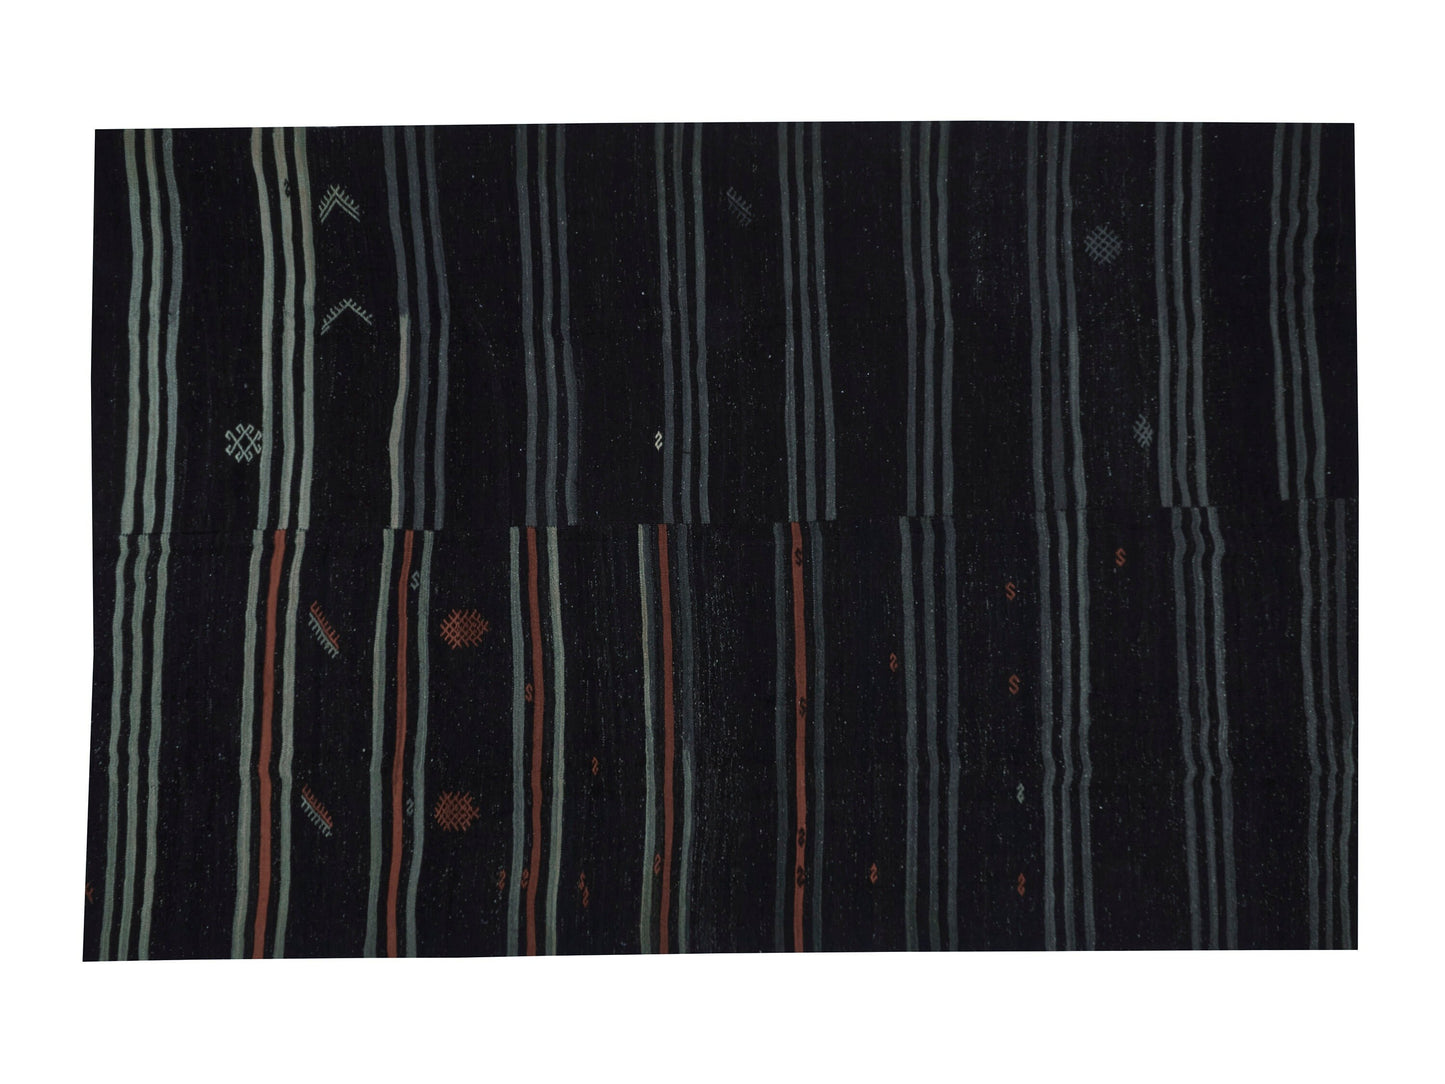 Handmade Kilim Rug, Turkish Kilim, Large Black Rug, Farmhouse Decor, Vintage Rug, Oversize Kilim Rug, Goat Hair Rug, Rug Kilim 9x13, 11496